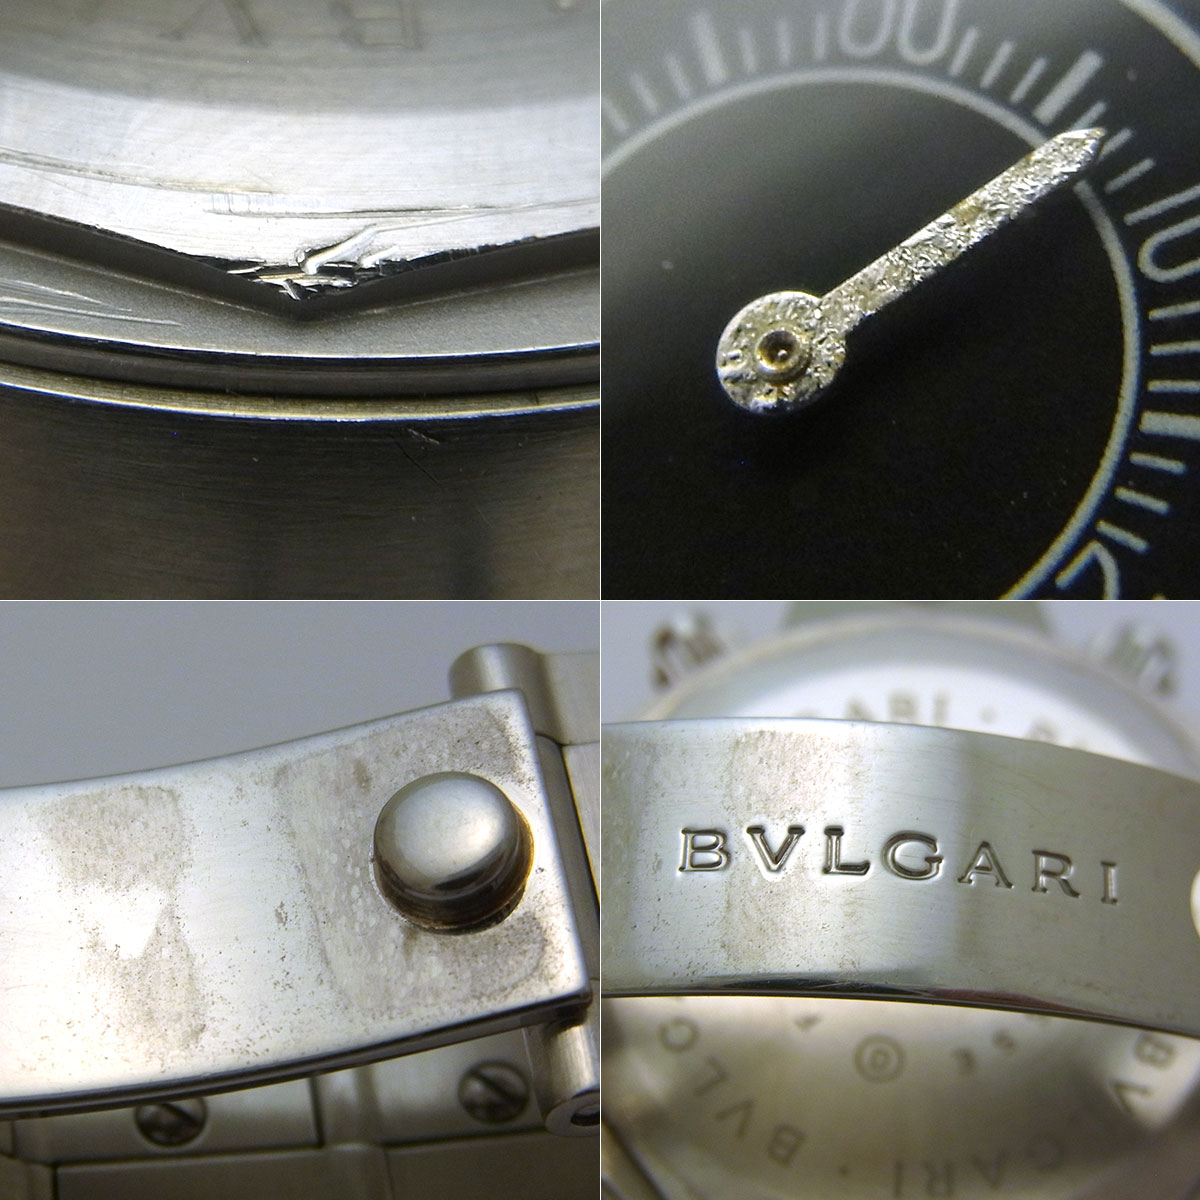 ブルガリ(BVLGARI) ディアゴノ スクーバ クロノグラフ SC38SS メンズ 腕時計 黒文字盤